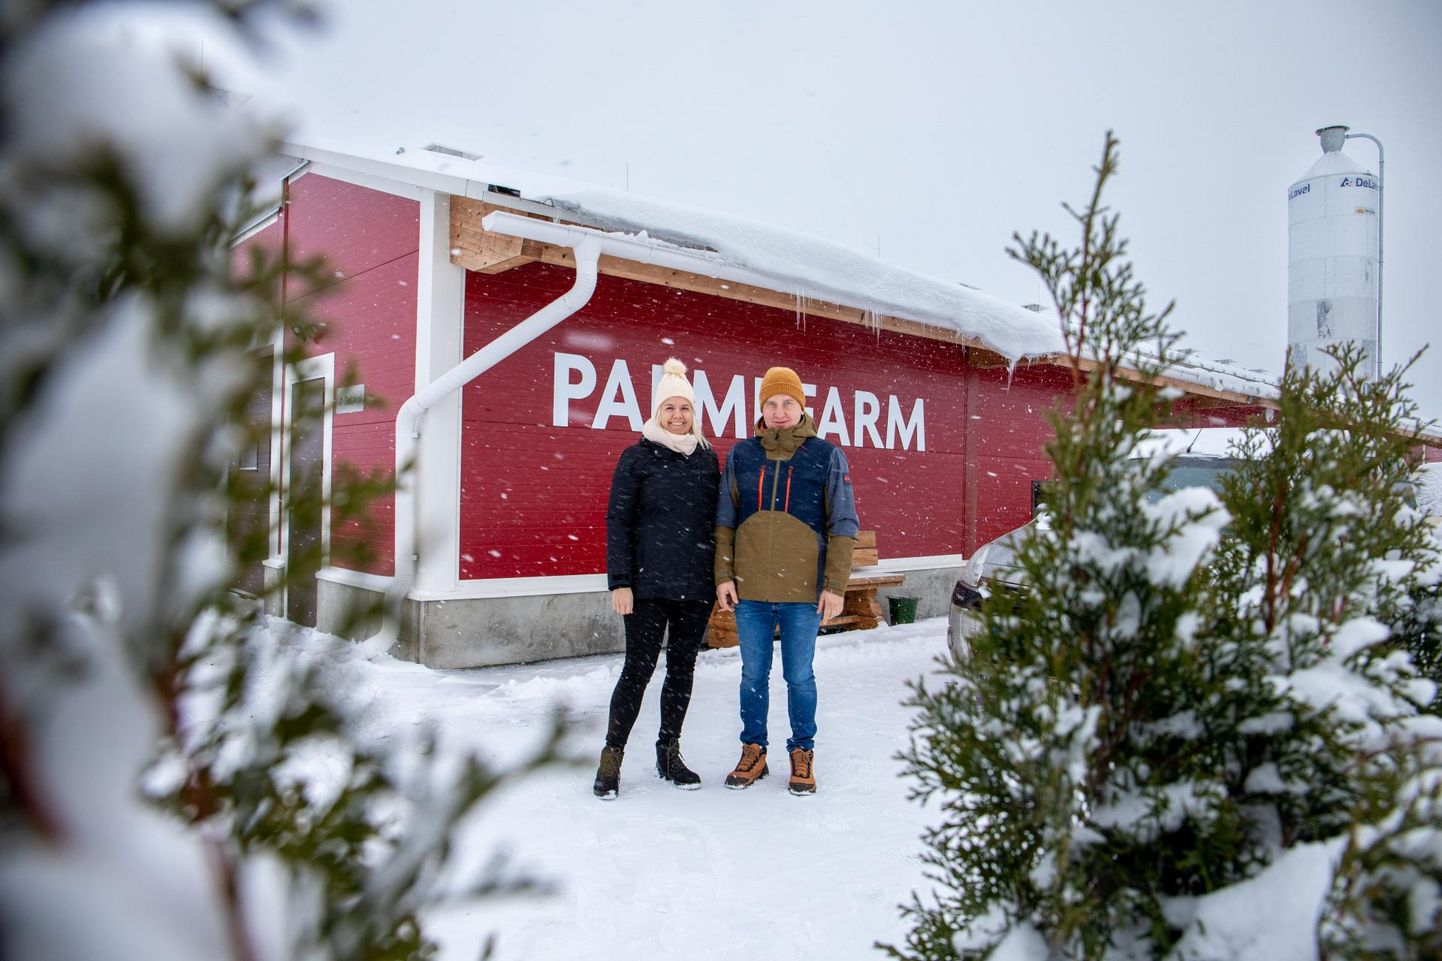 Palmi farm on Pärnumaal uusim robotlüpsilaut, kus majandavad Karoliina Post ja Janno Liiv.